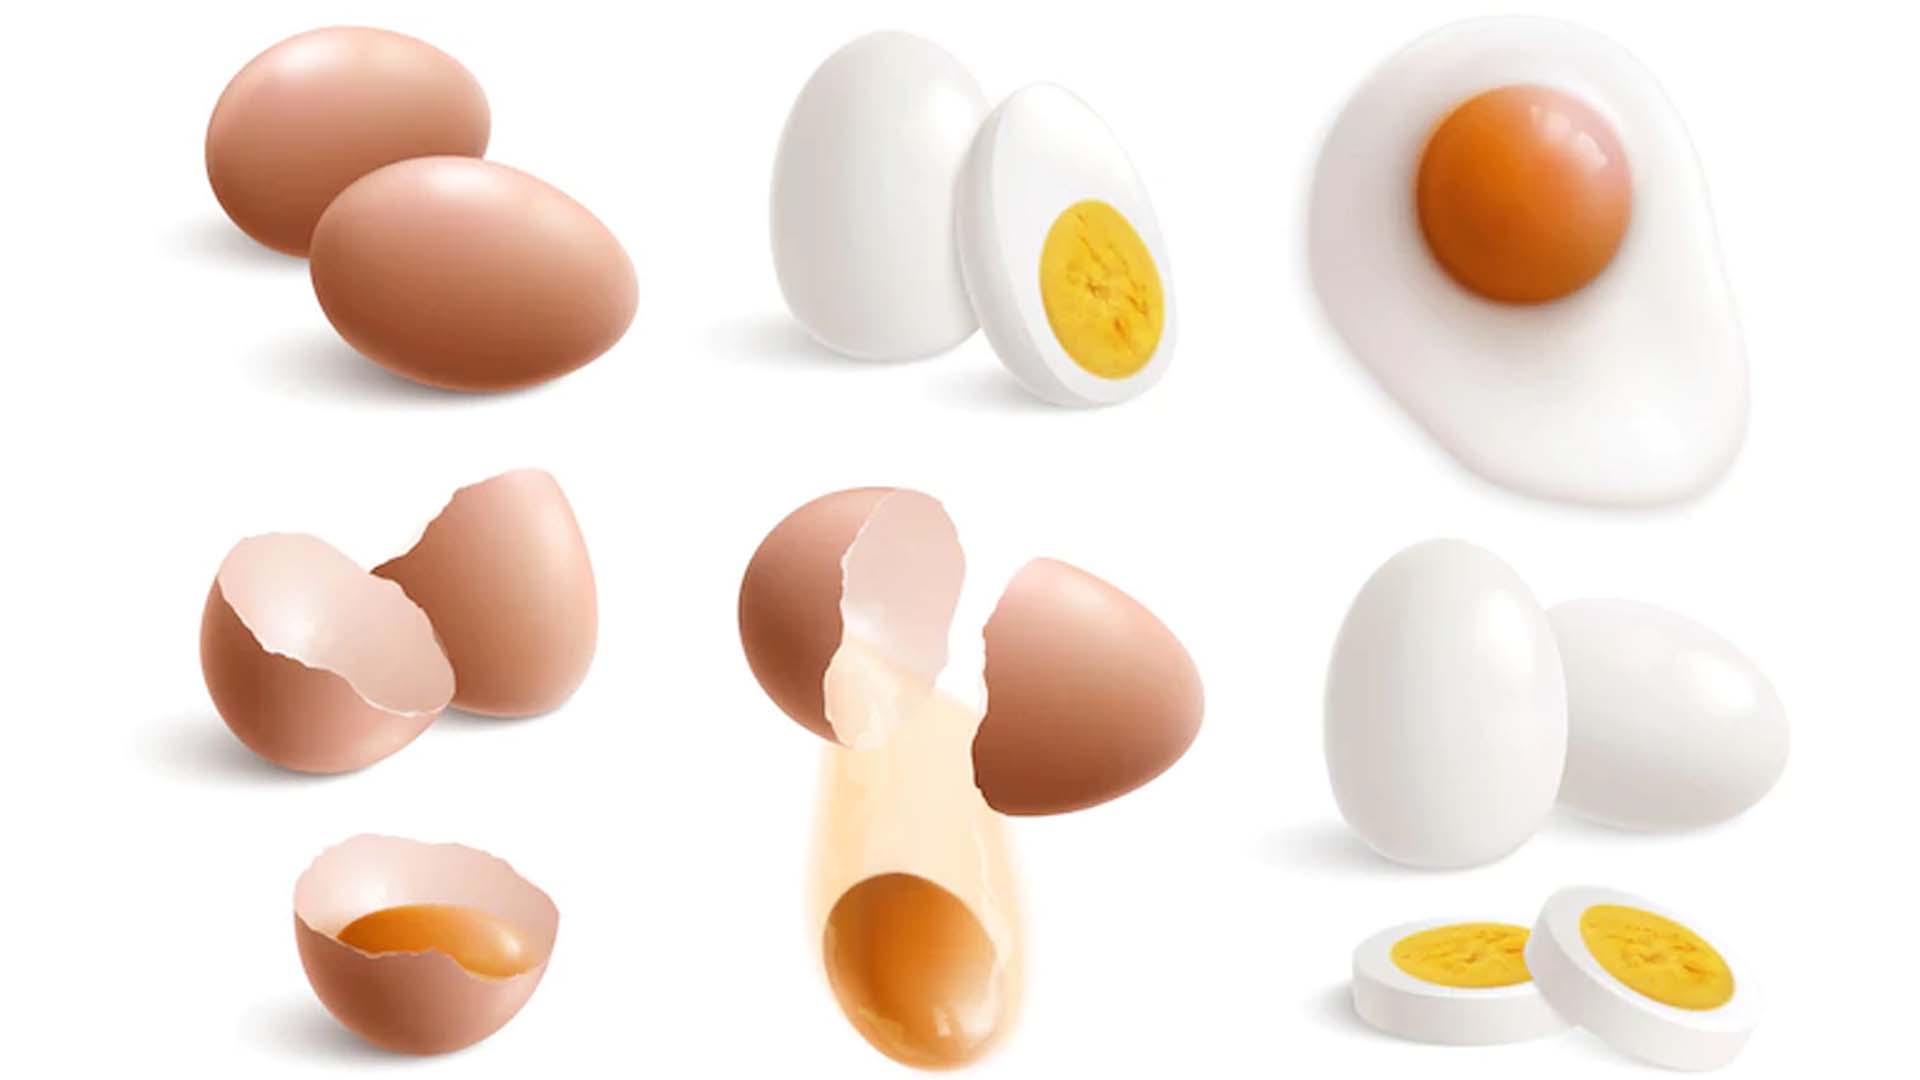 Nutritional Values of Raw Egg, Egg White, Egg Yolk and Boiled Egg